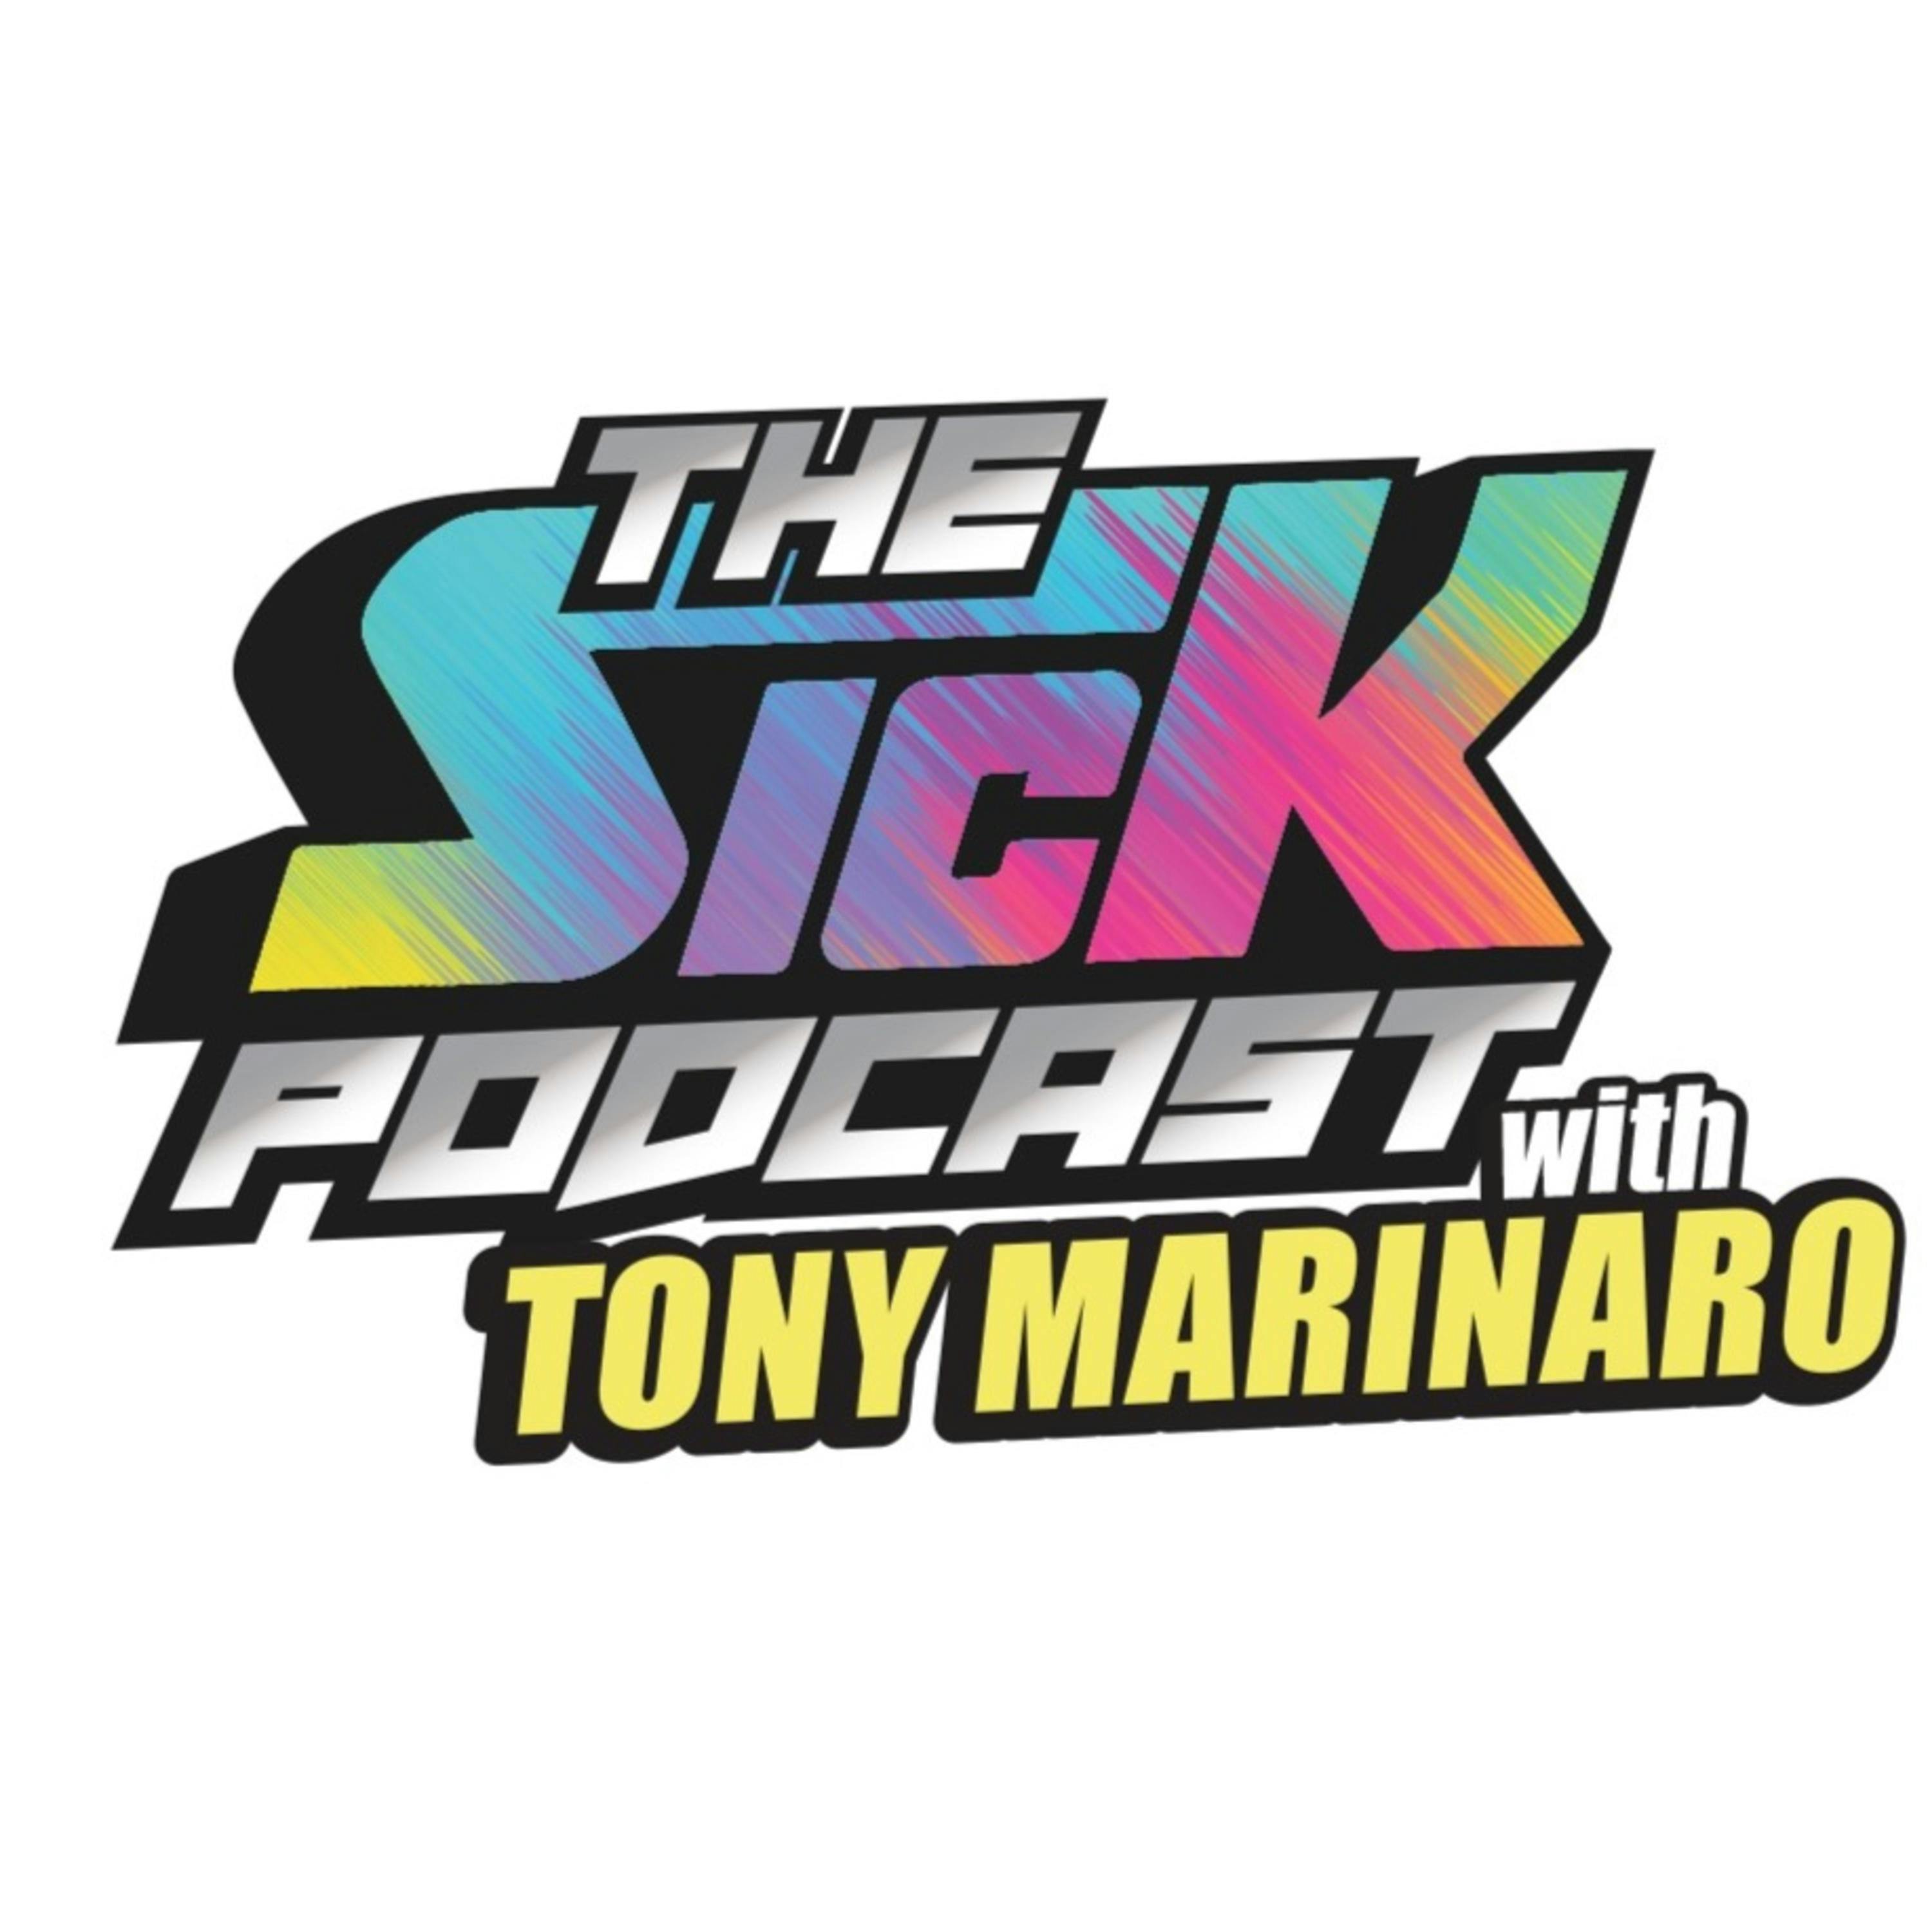 Habs Fly Past The Jets | The Sick Podcast with Tony Marinaro January 17 2023